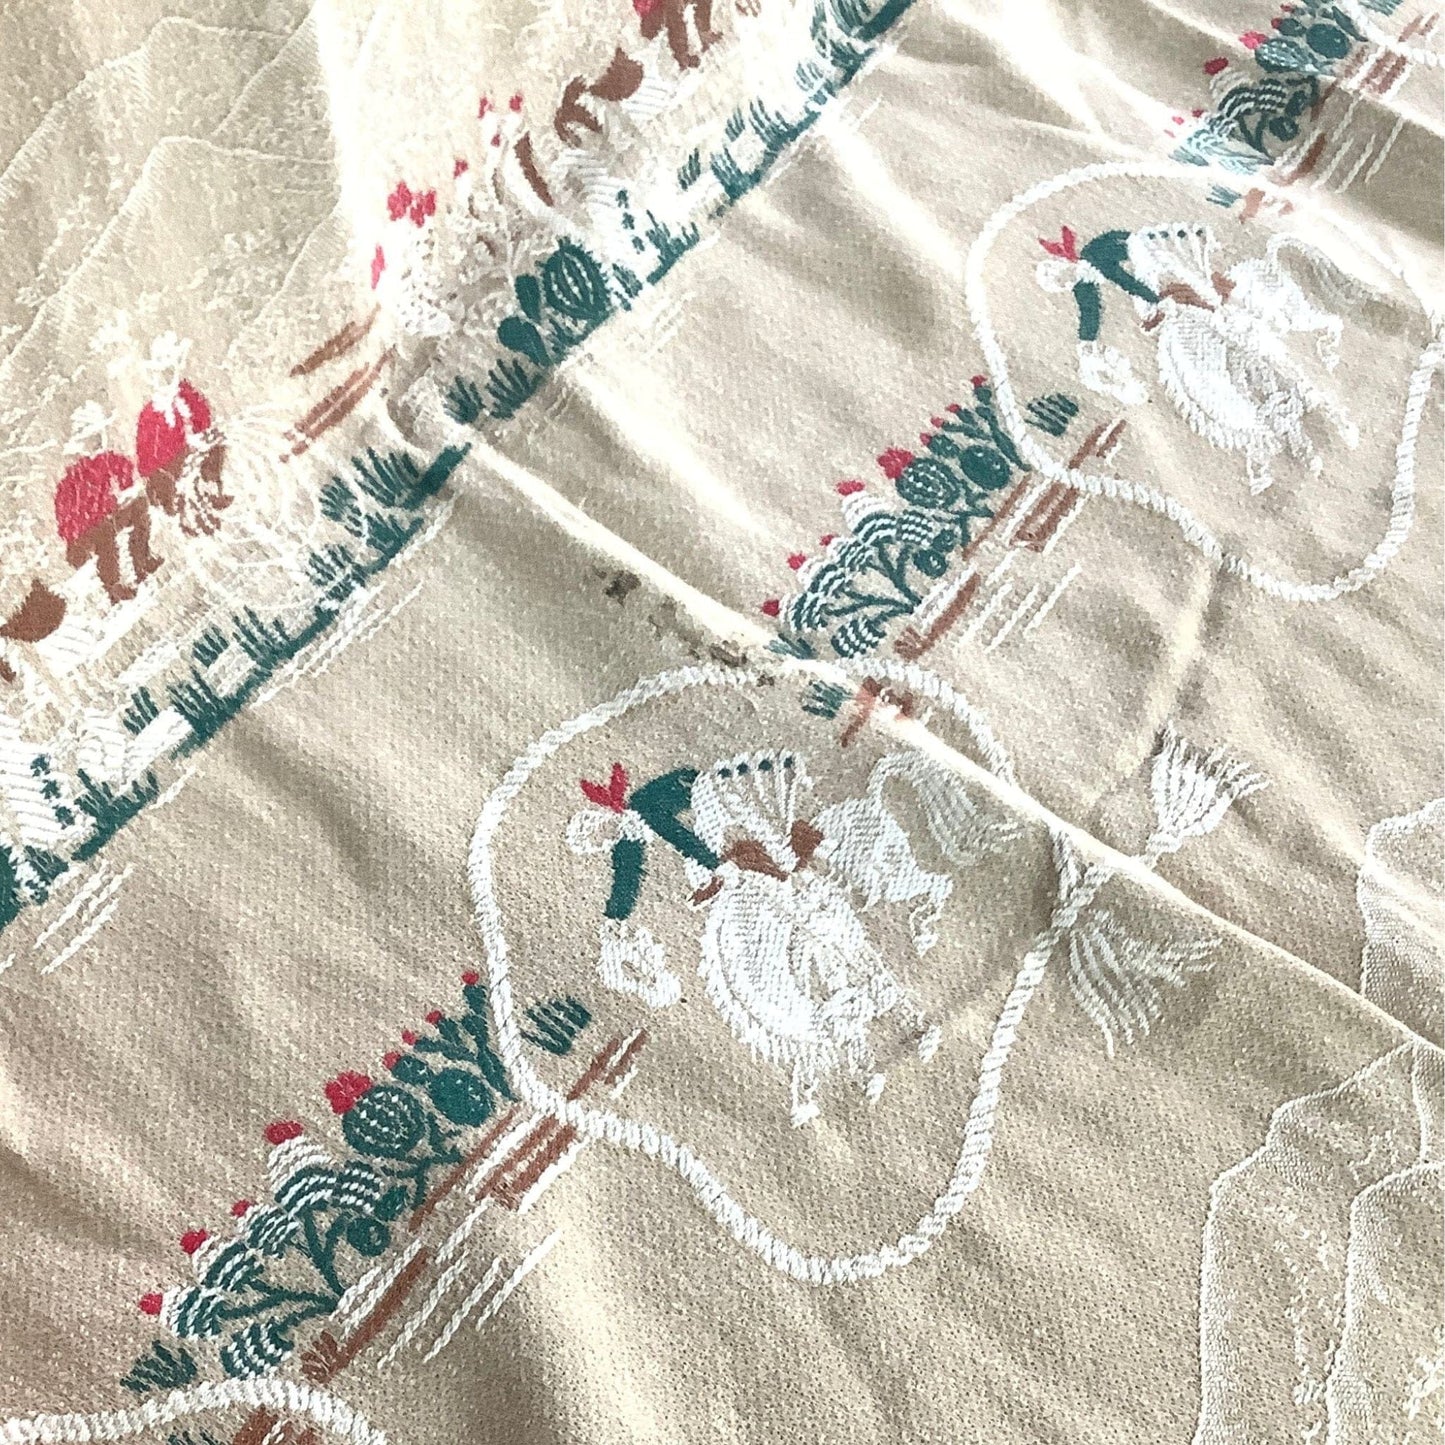 VTG Cowboy Bedspread Multi / Cotton / Vintage 1950s